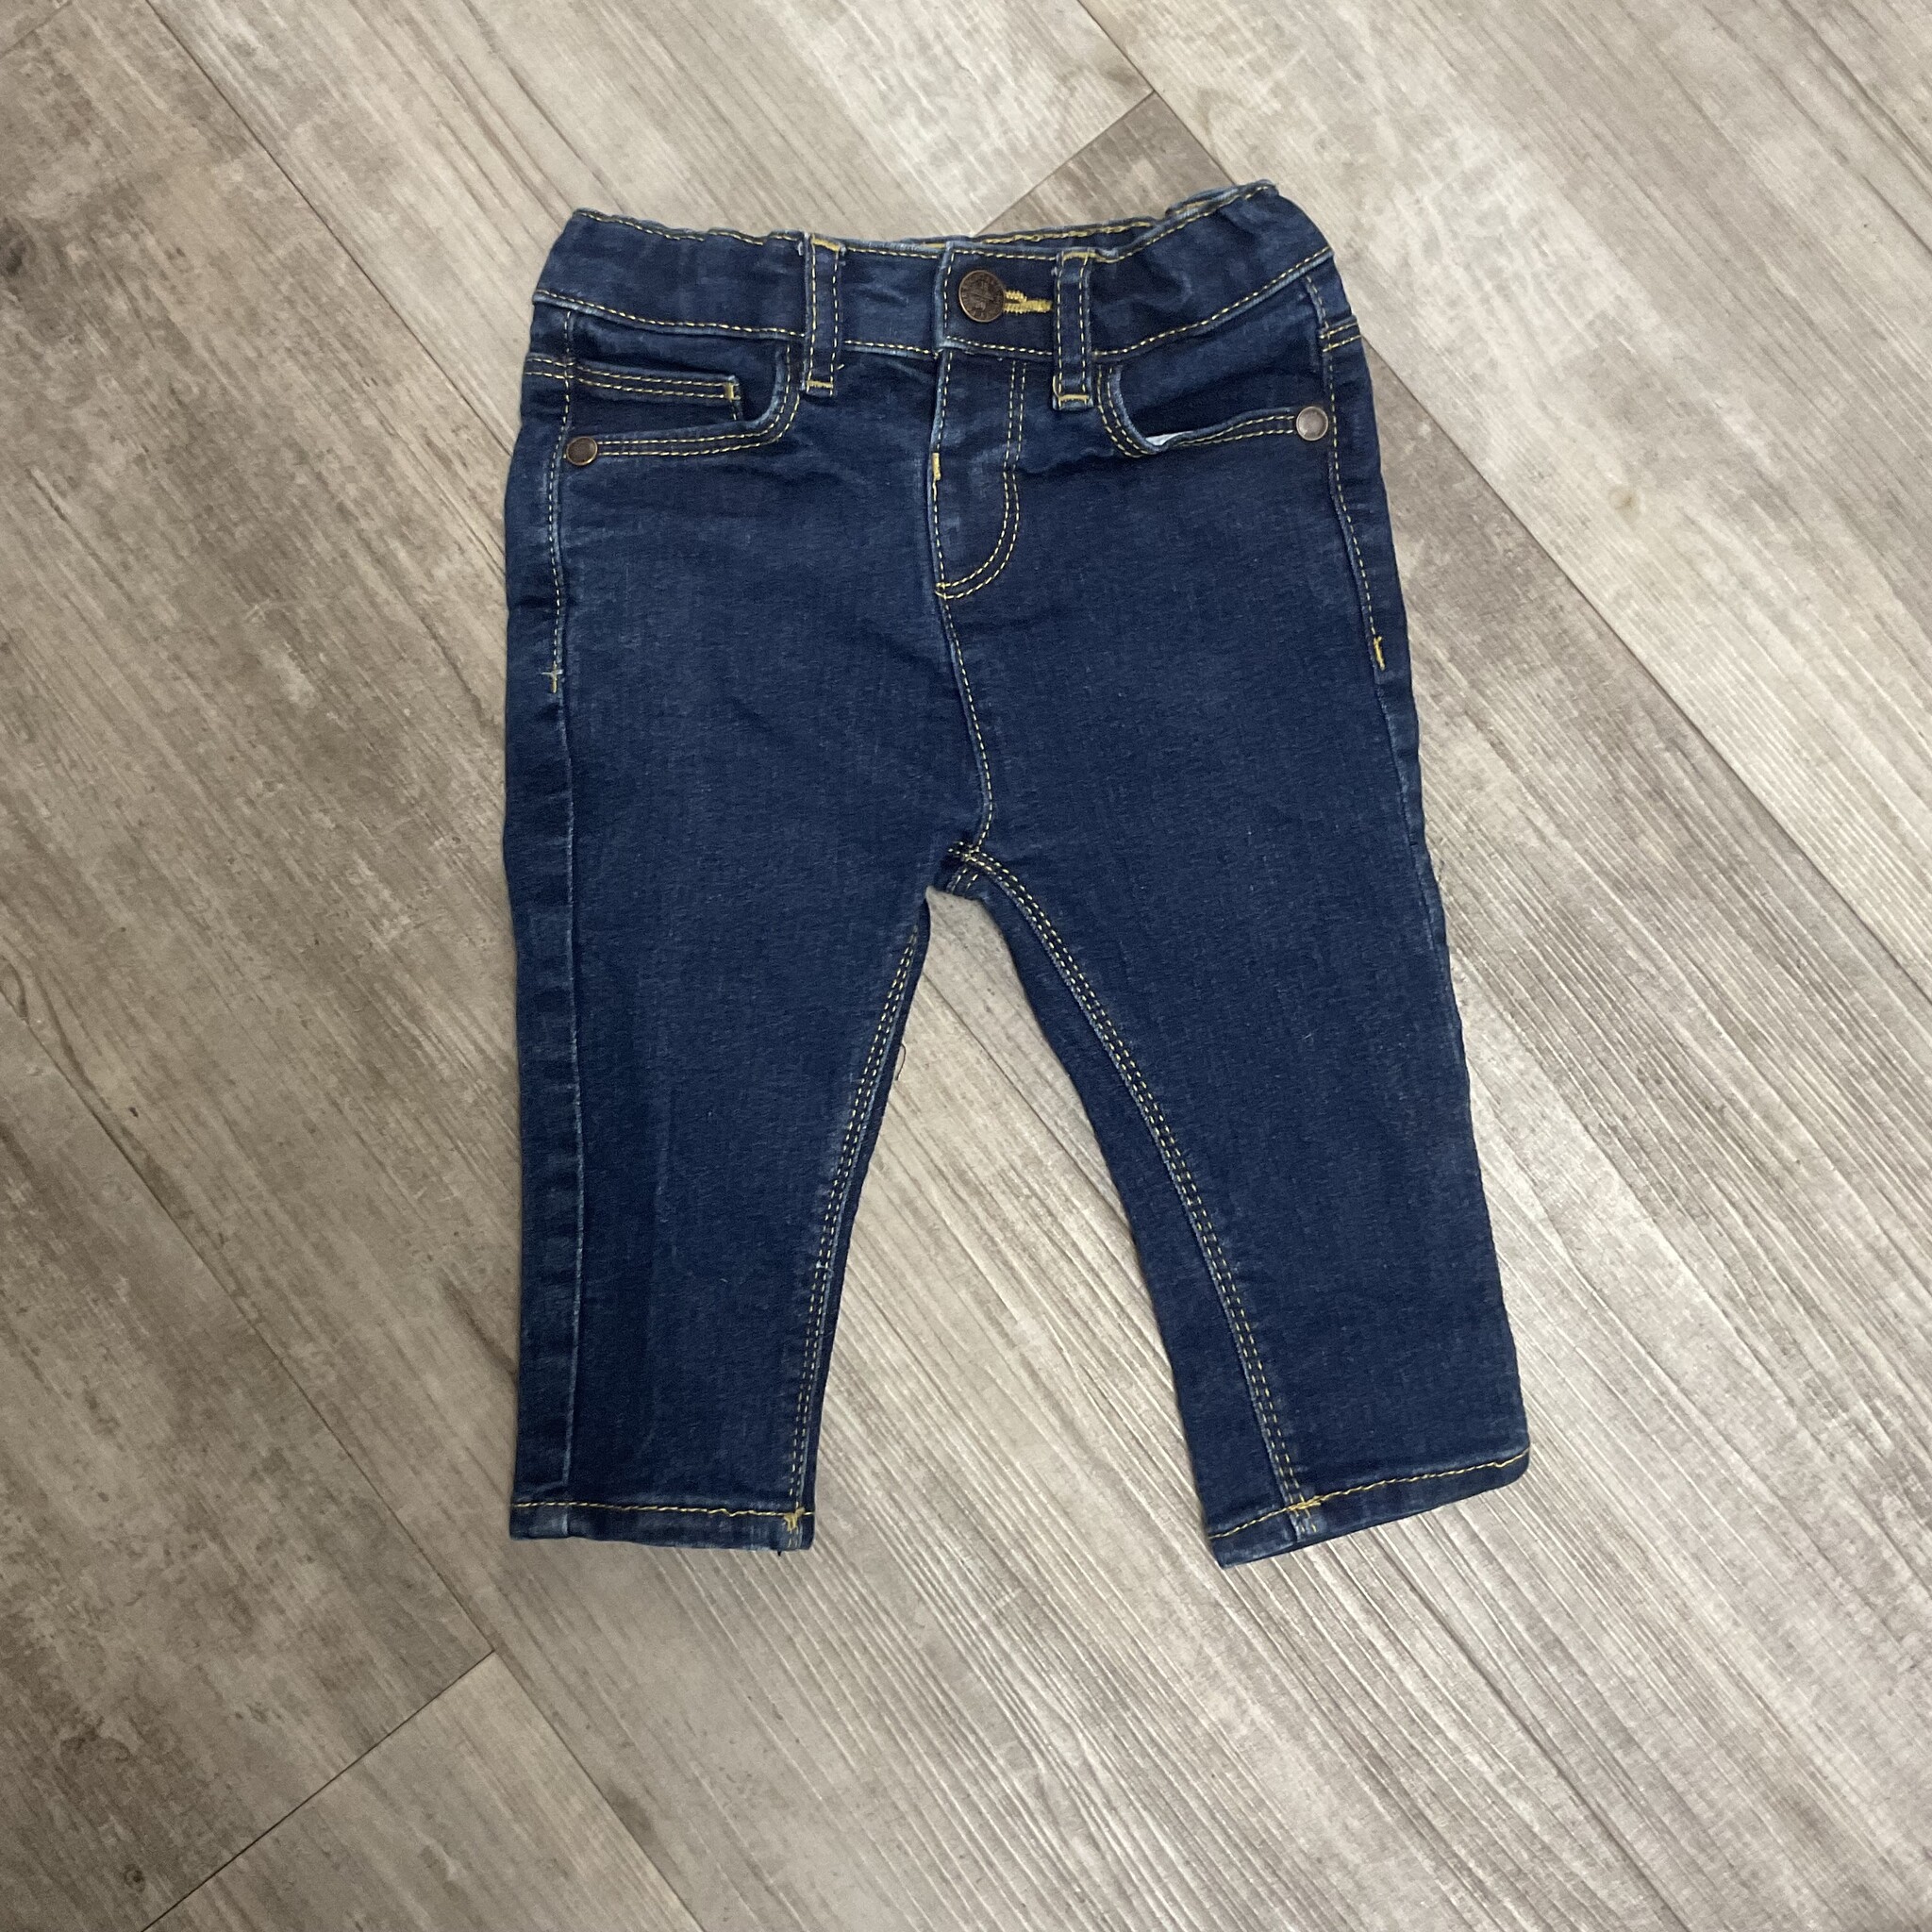 Dark Wash Slim Fit Jeans - Size 6-9M